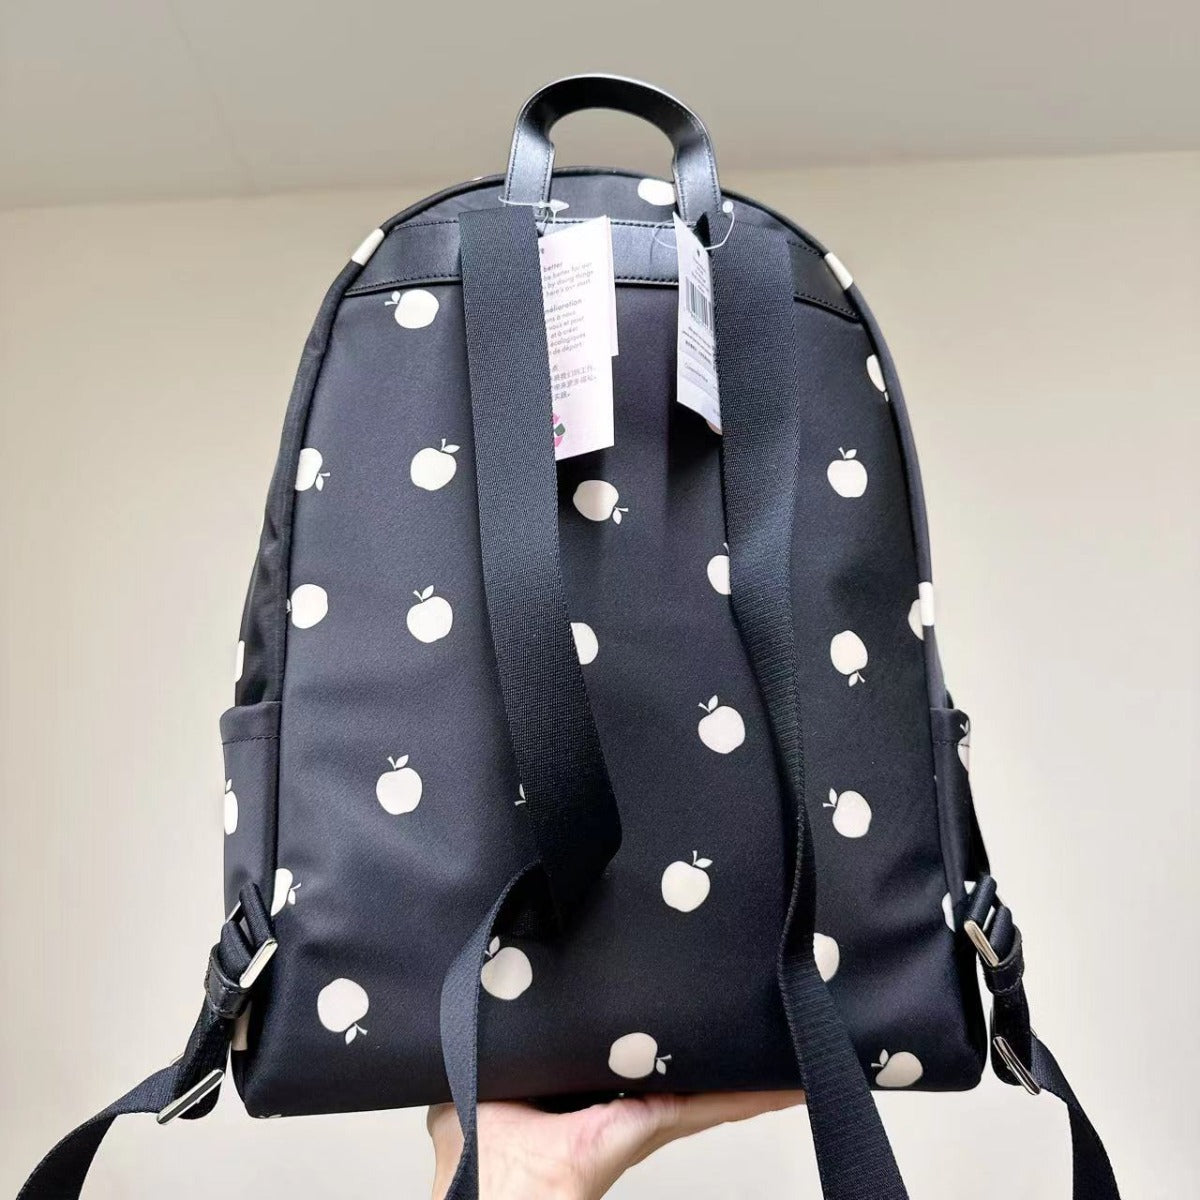 Kate Spade K9248 Chelsea Little Better Nylon Large Backpack In Black Multi 196021117435